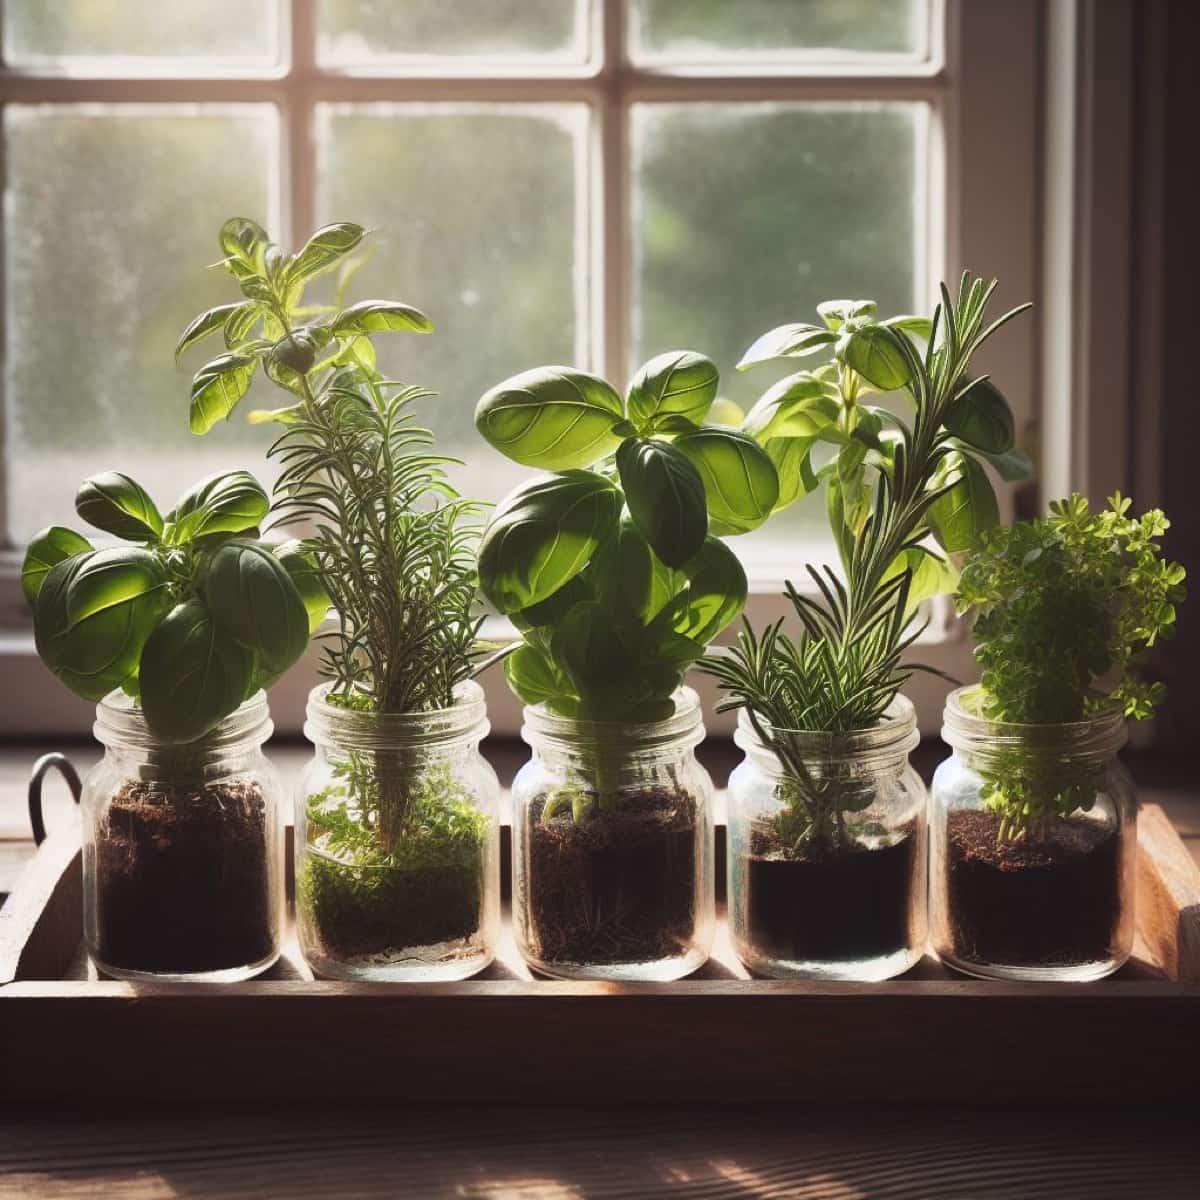 How to Build a Mason Jar Herb Garden